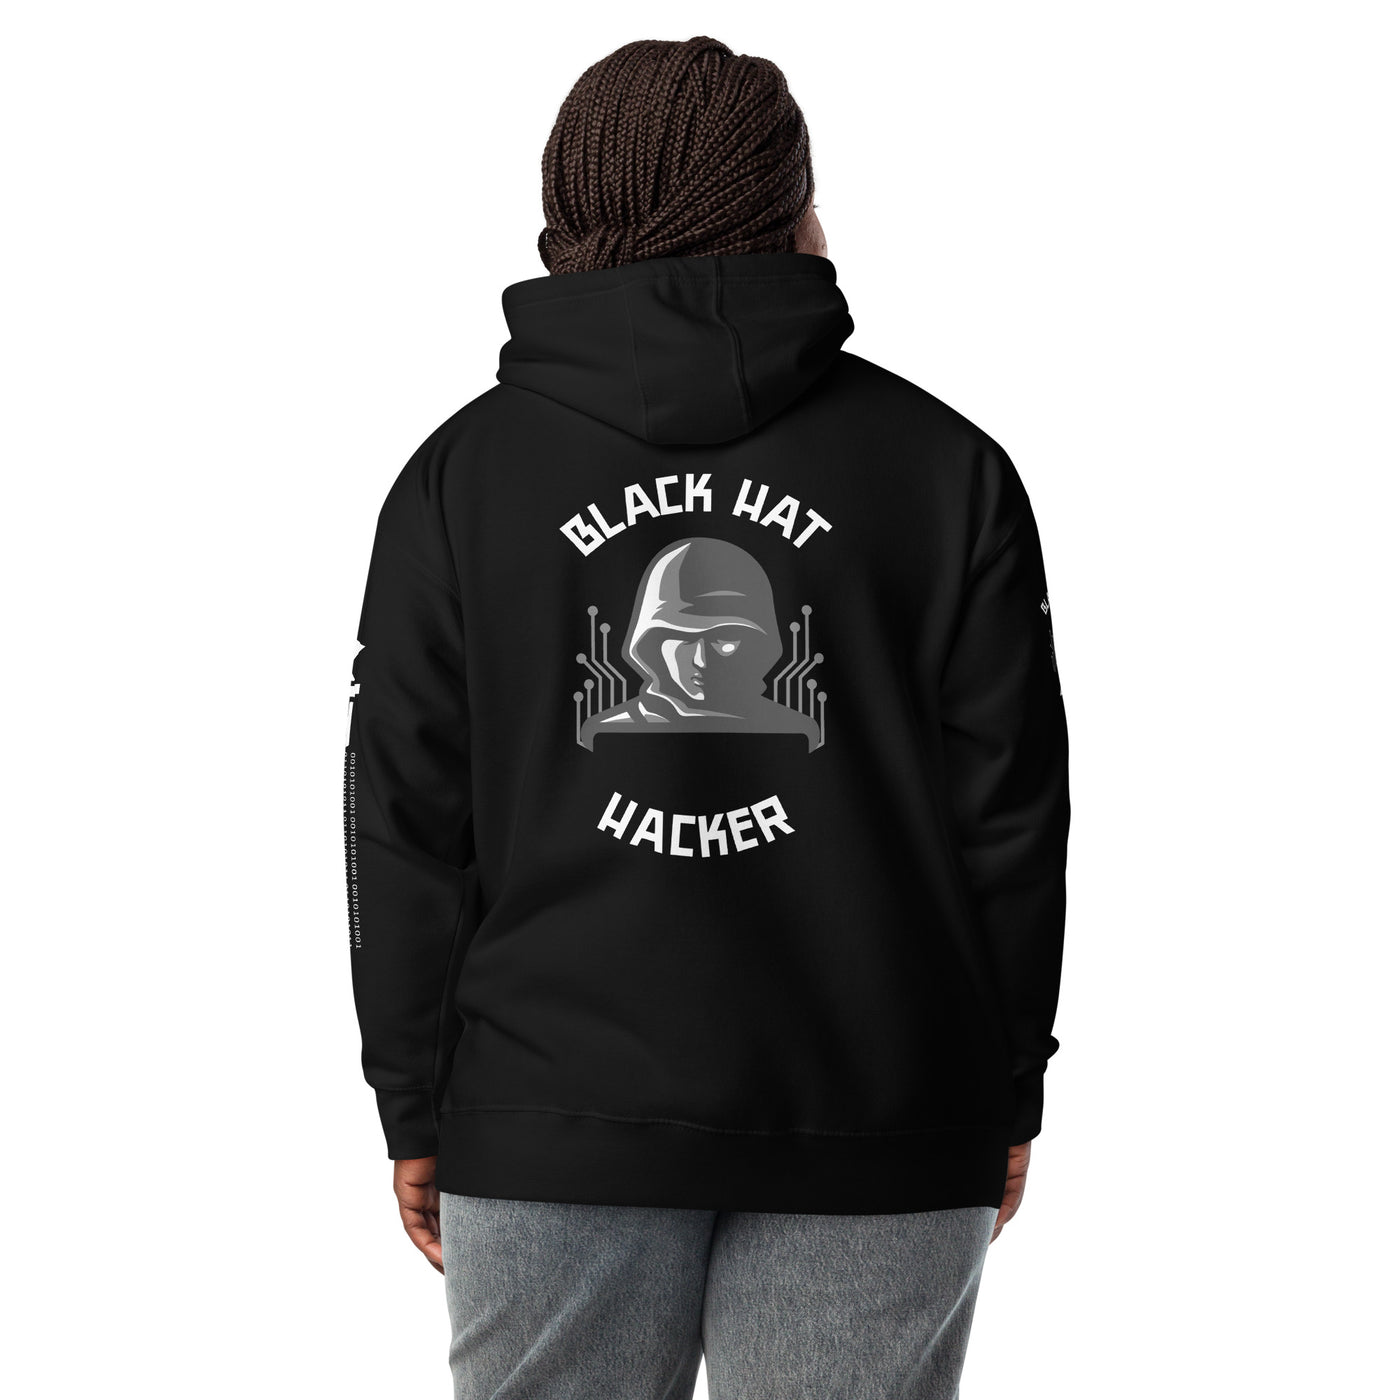 Black Hat Hacker - Unisex Hoodie